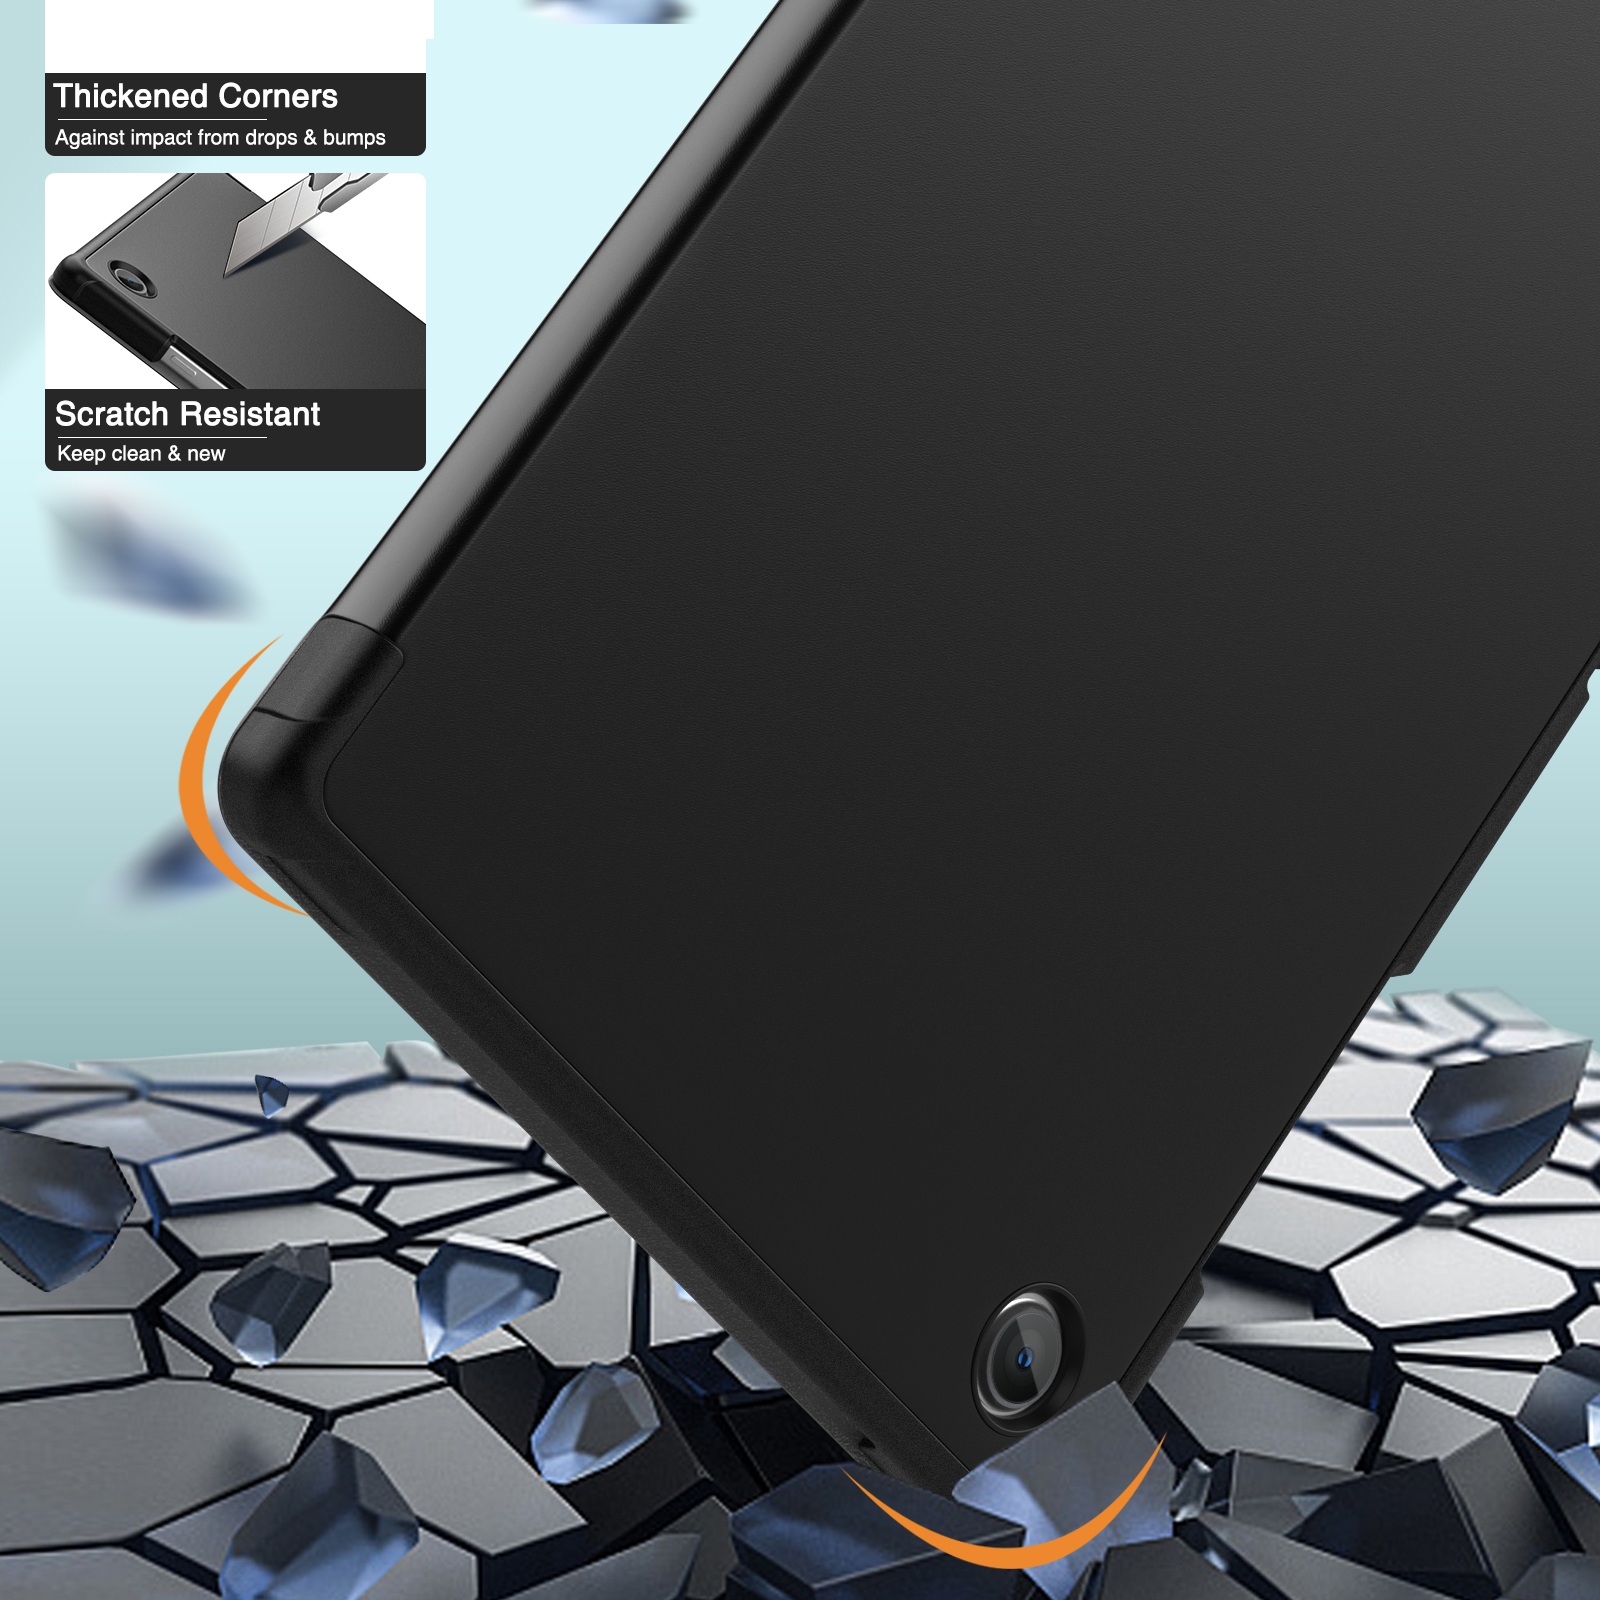 Bao da chống sốc cho Samsung Galaxy Tab A8 10.5 inch 2022 (SM-X200 / X205 / X207) hiệu HOTCASE thiết kế siêu mỏng hỗ trợ Smartsleep, gập nhiều tư thế, mặt da siêu mịn - hàng nhập khẩu